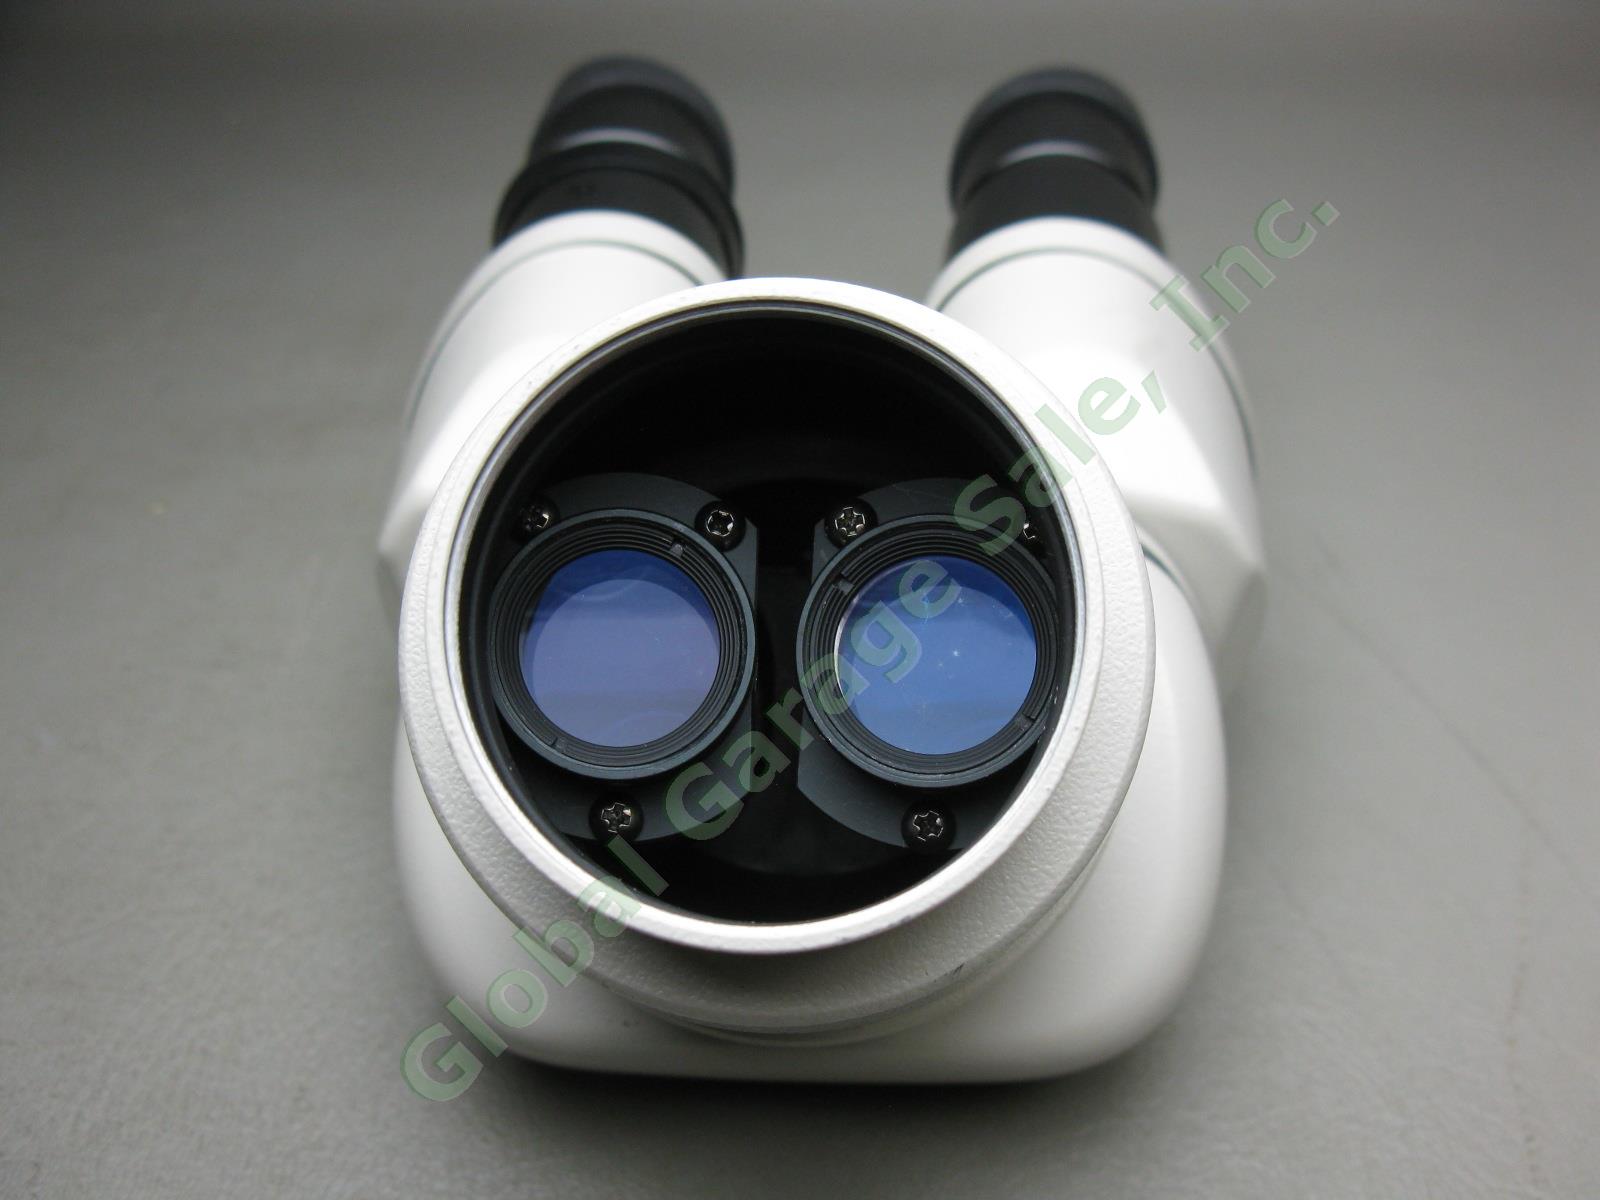 Nikon OBJ.2x Binocular Microscope W/ 10x/20 Eyepieces Stand #217542 No Reserve! 10